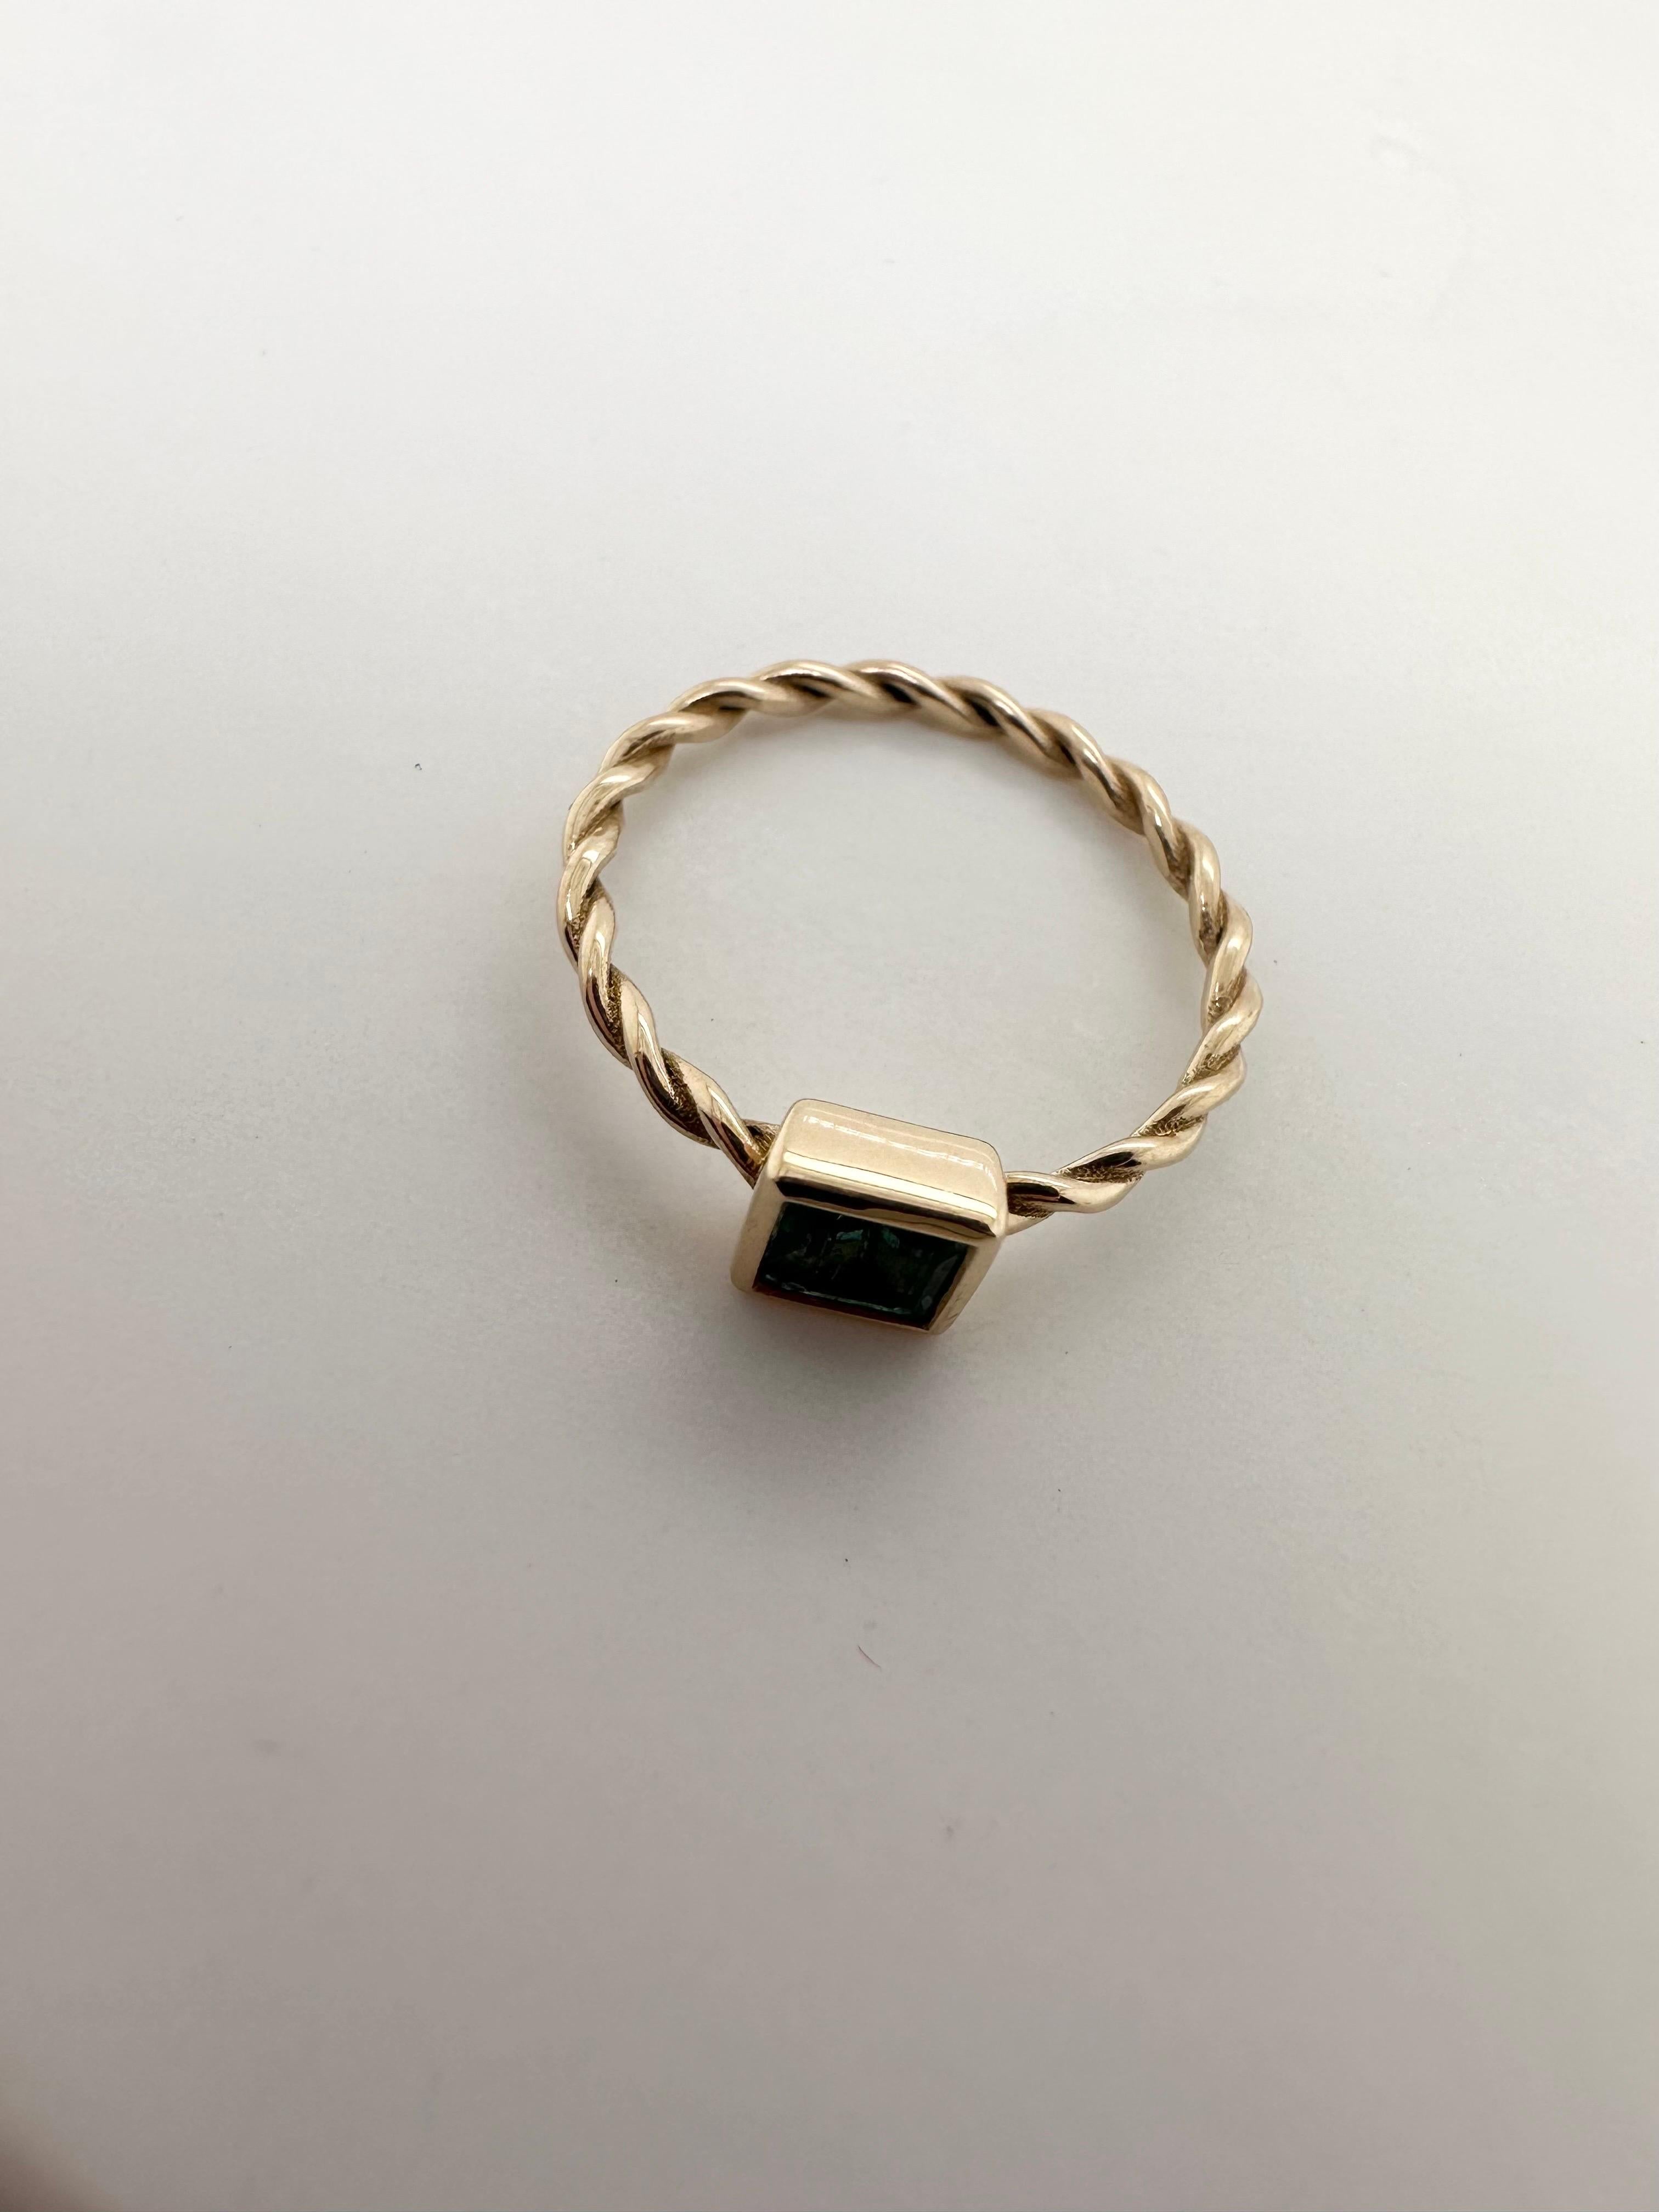 Dies ist ein Ring der Größe 3,75, der sofort lieferbar ist! DIESER RING KANN NICHT IN DER GRÖSSE VERÄNDERT WERDEN!

Classy Minimalist Ring in 14KT Gelbgold, machten wir den Ring mit gedrehten Schaft und quadratischen modernen oben, kann der Ring als